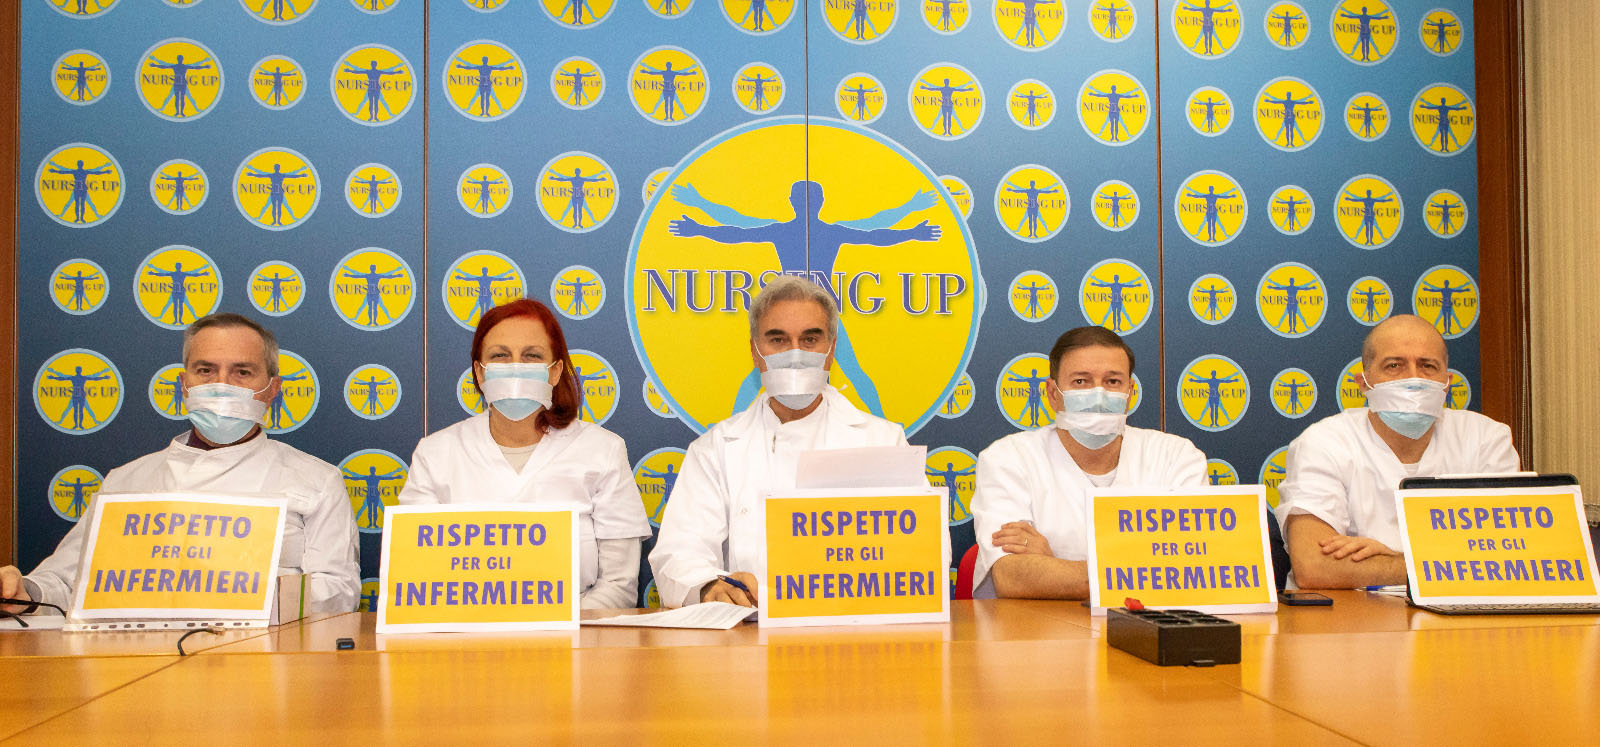 Nursing Up, clamorosa protesta: infermieri imbavagliati durante le trattative per il rinnovo del contratto della sanità